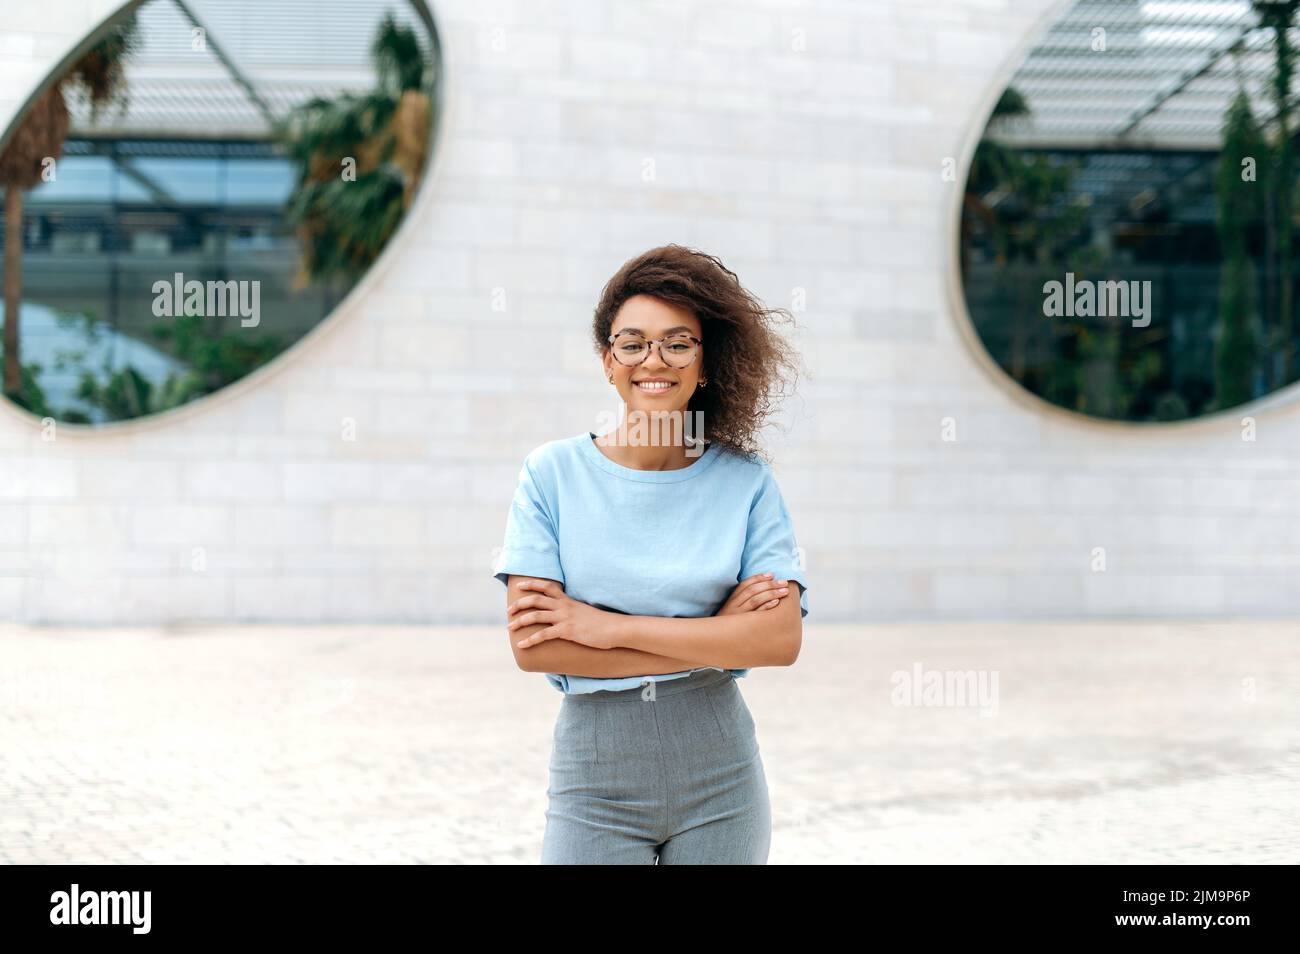 Porträt einer positiv eleganten, hübschen afroamerikanischen jungen Frau mit lockigen Haaren, Brille, blauem Hemd tragend, mit gekreuzten Armen im Freien stehend, lächelnd auf die Kamera schauend Stockfoto